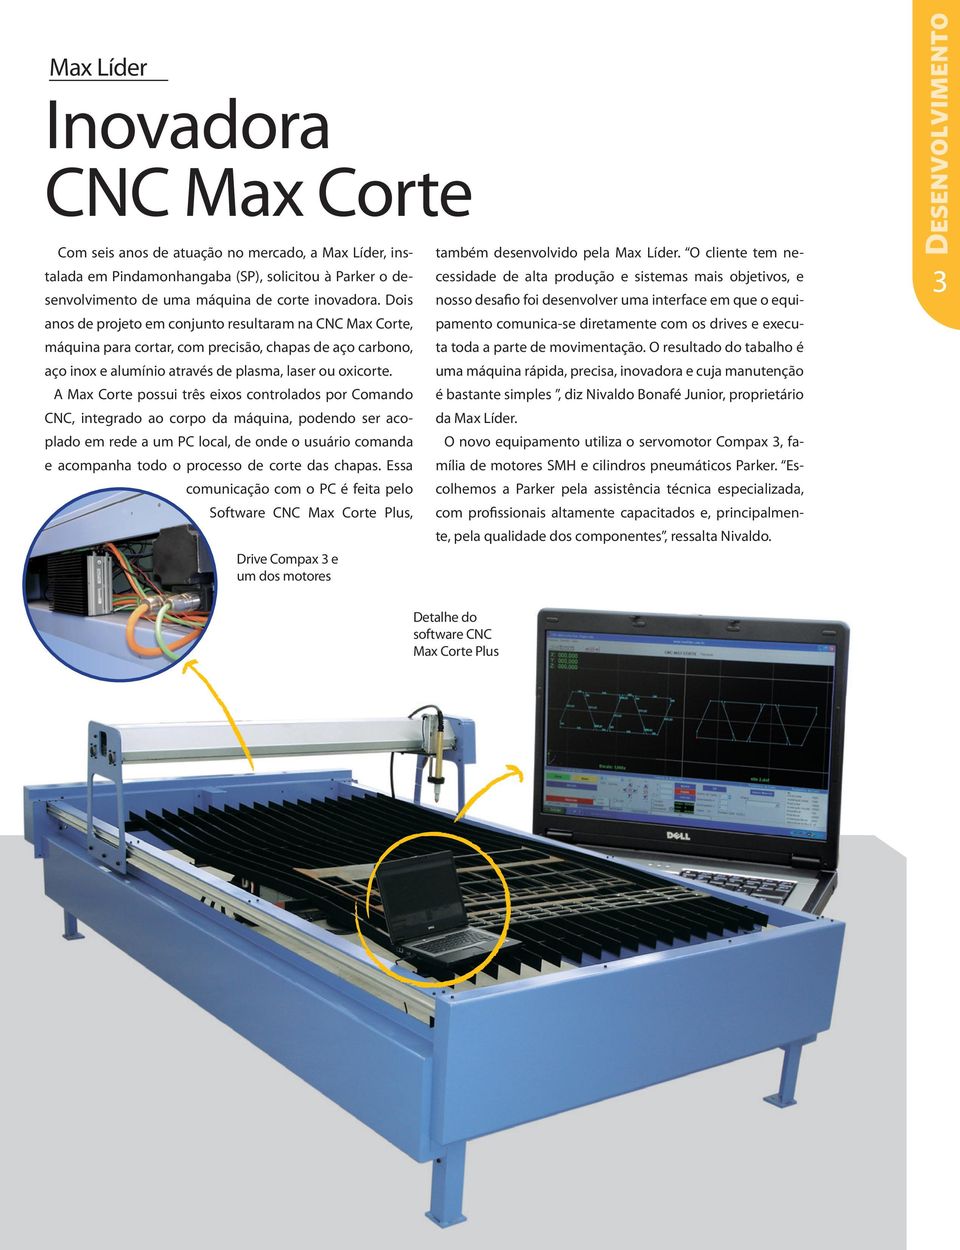 A Max Corte possui três eixos controlados por Comando CNC, integrado ao corpo da máquina, podendo ser acoplado em rede a um PC local, de onde o usuário comanda e acompanha todo o processo de corte